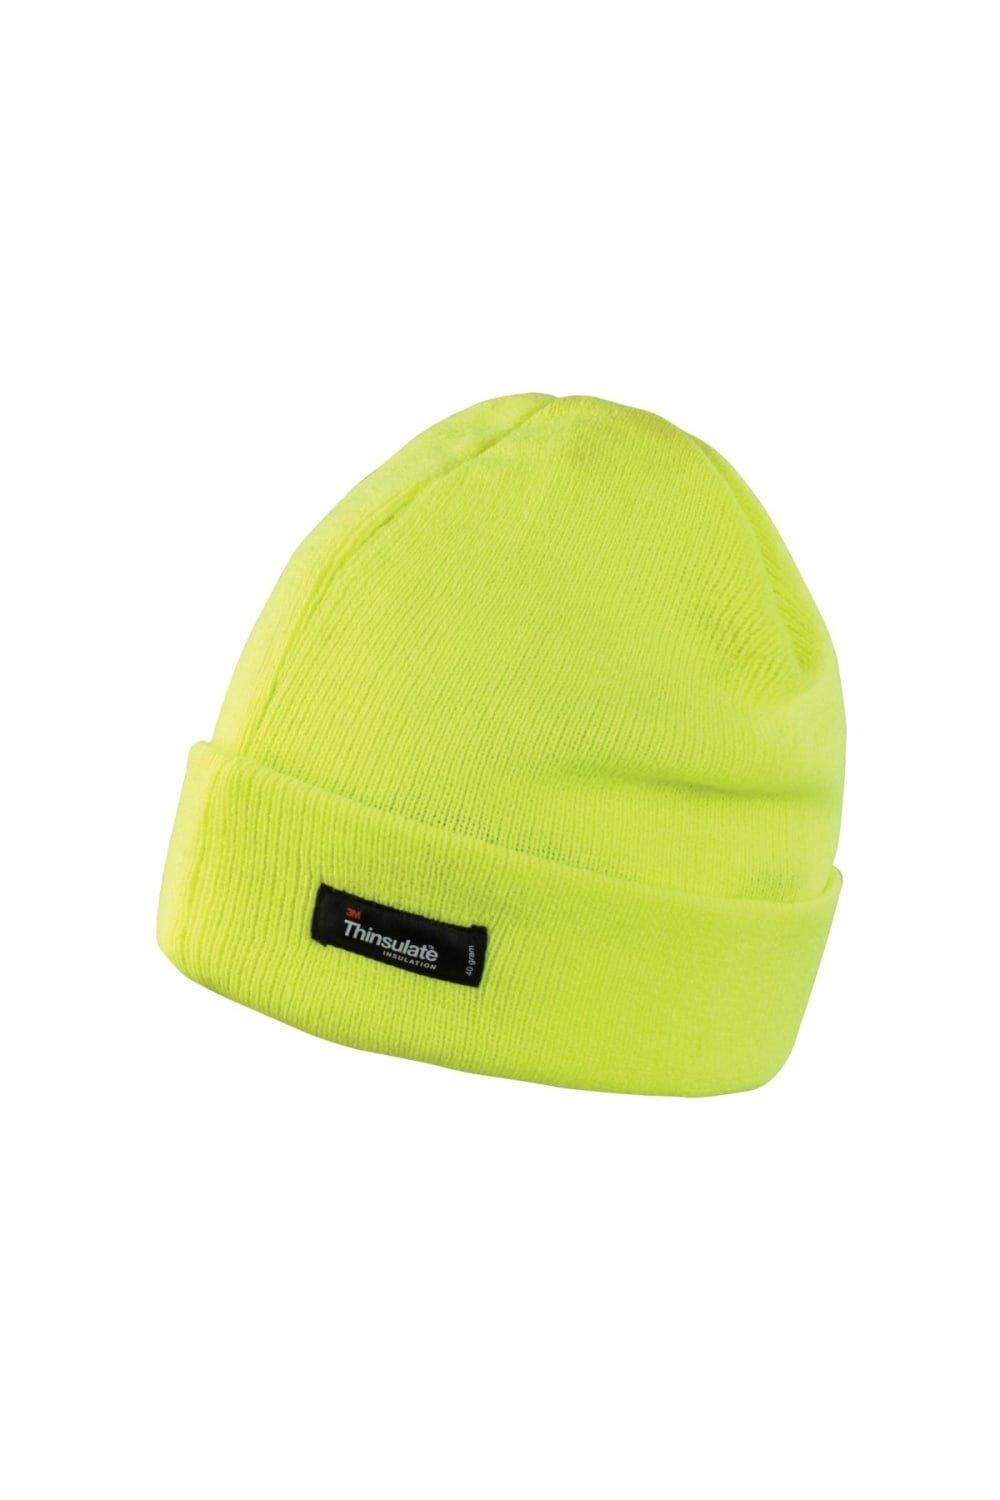 цена Легкая термозимняя шапка Thinsulate (3M, 40 г) Result, желтый